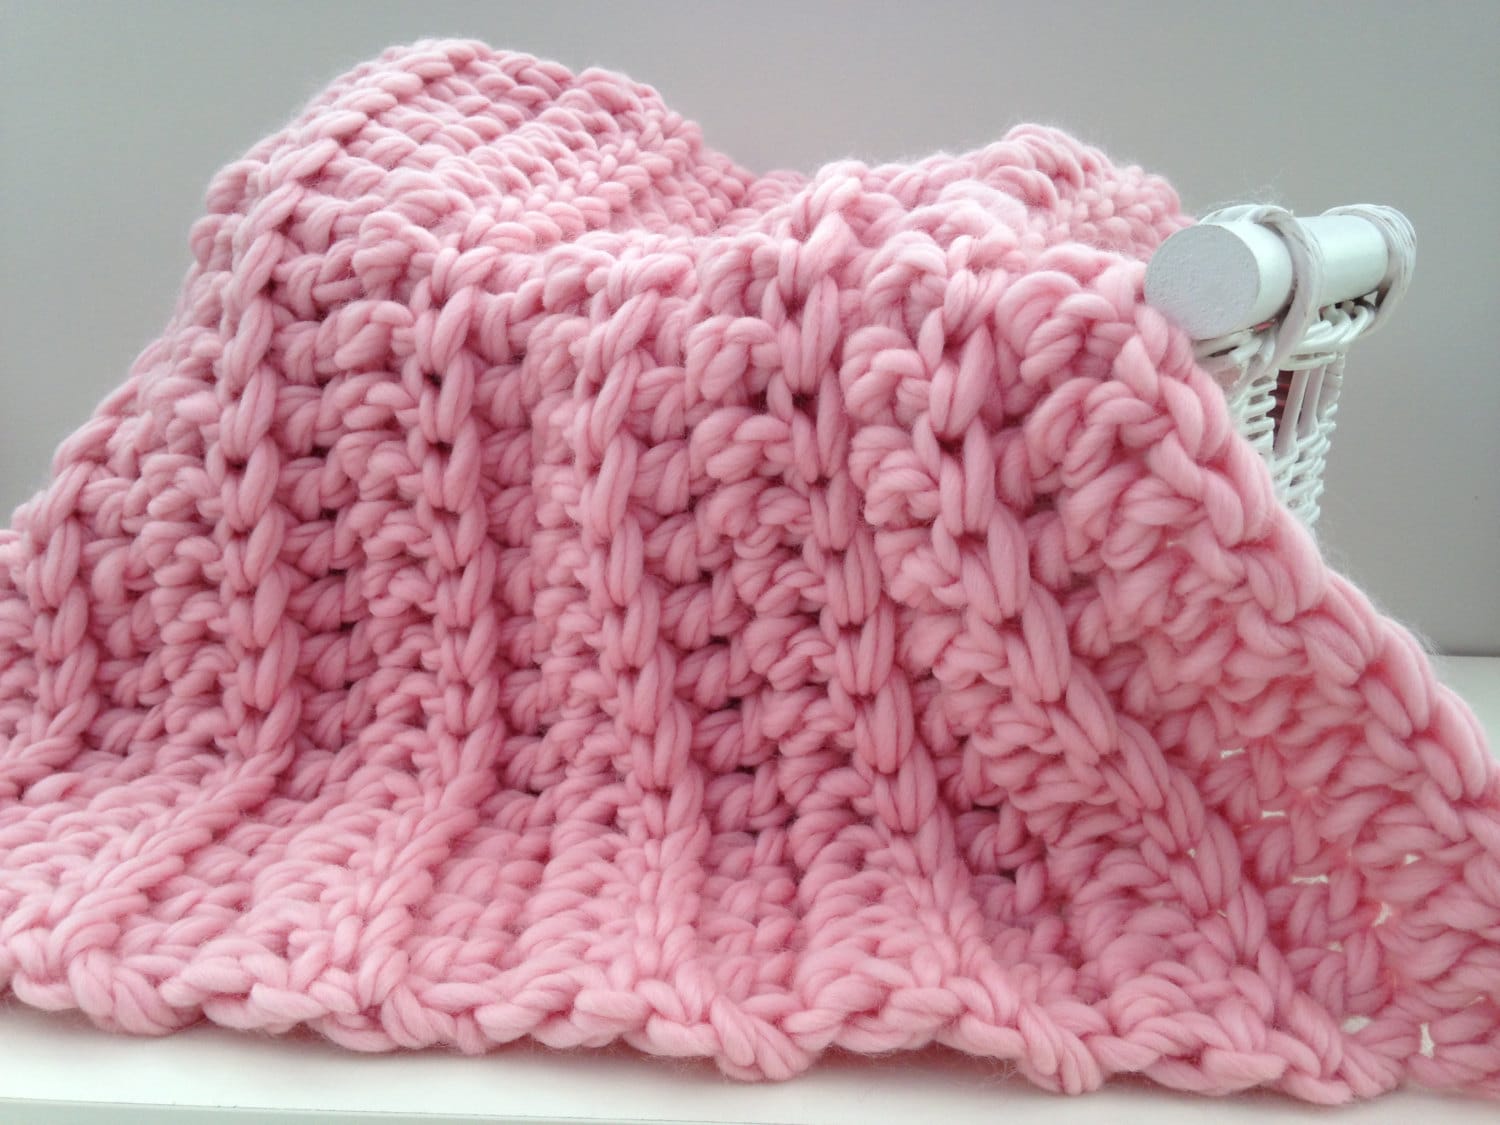 Blanket crochet kit baby blanket. DIY Learn to crochet super